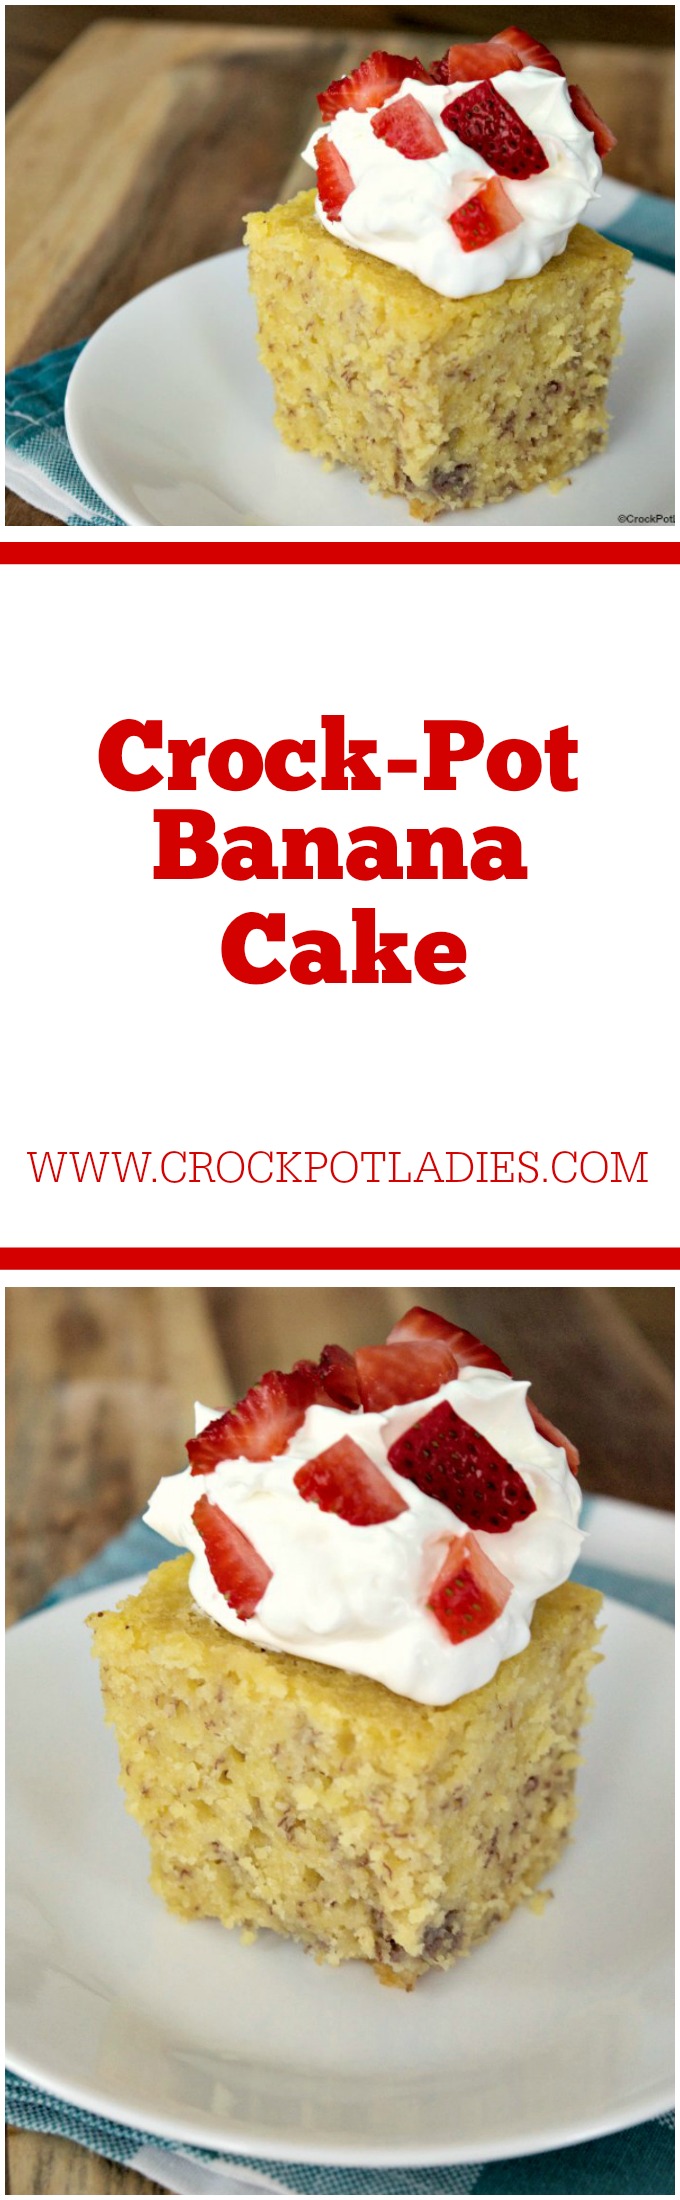 Crock-Pot Banana Cake